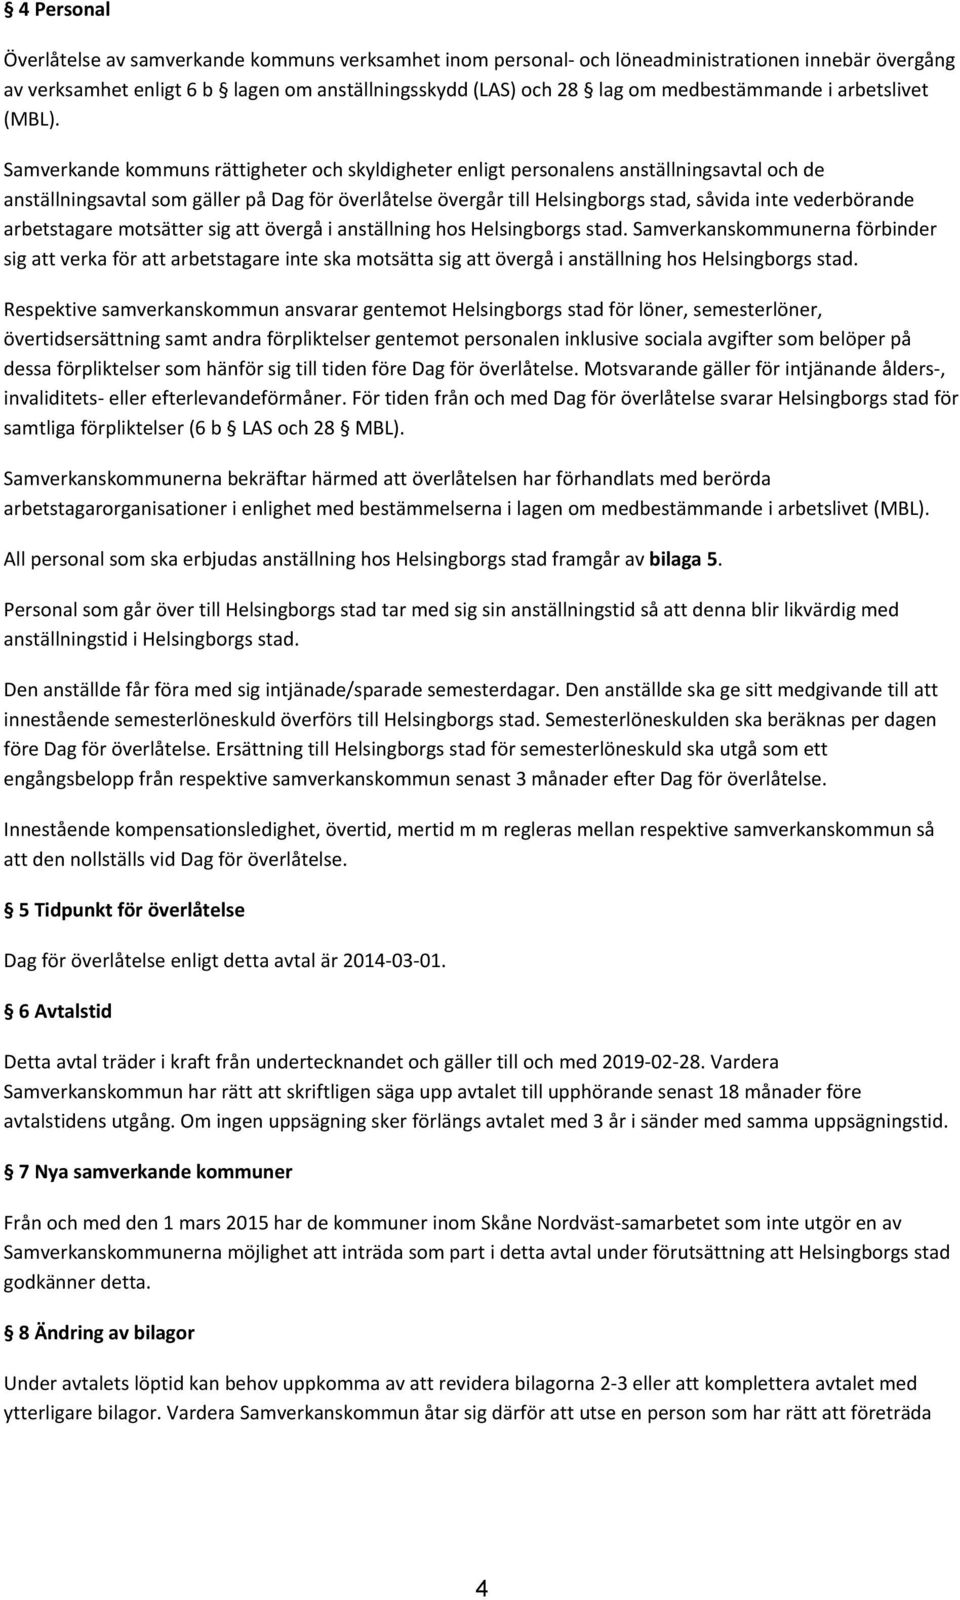 Samverkande kommuns rättigheter och skyldigheter enligt personalens anställningsavtal och de anställningsavtal som gäller på Dag för överlåtelse övergår till Helsingborgs stad, såvida inte